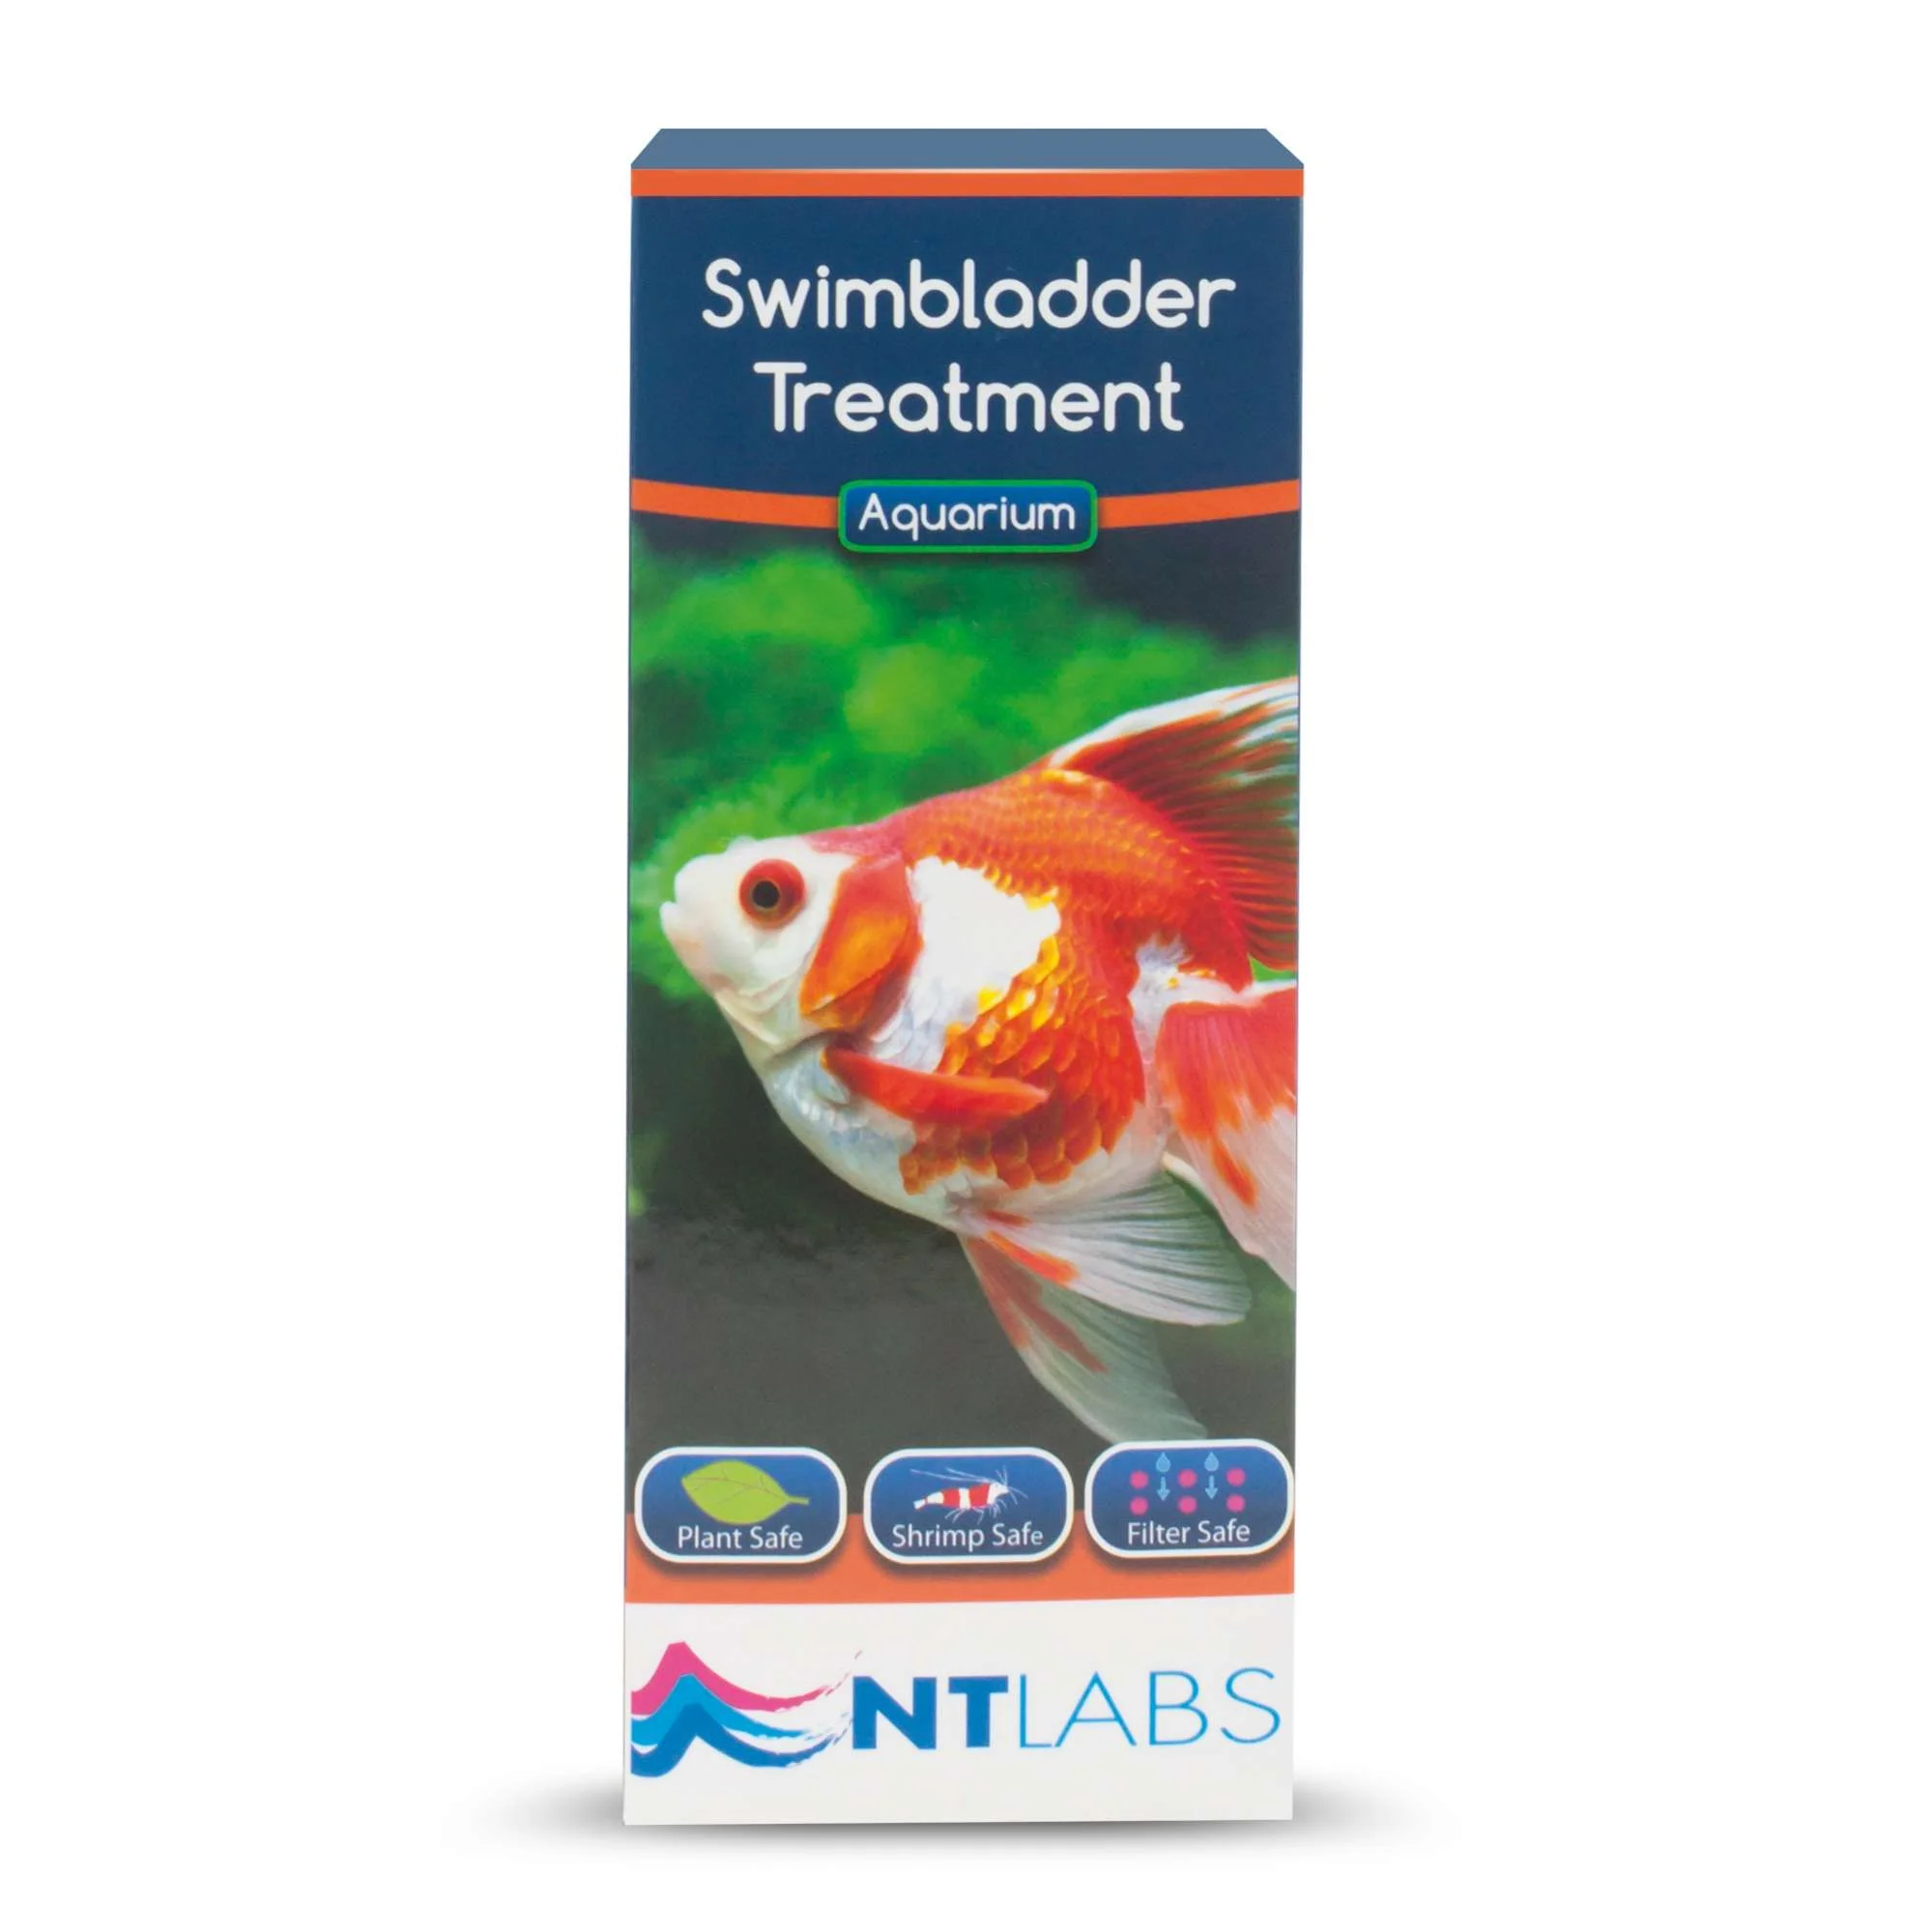 nt481-remedio-contra-problemas-de-la-vejiga-natatoria-swimbladder-treatment-de-ntlabs-100-ml_general_8949.jpg